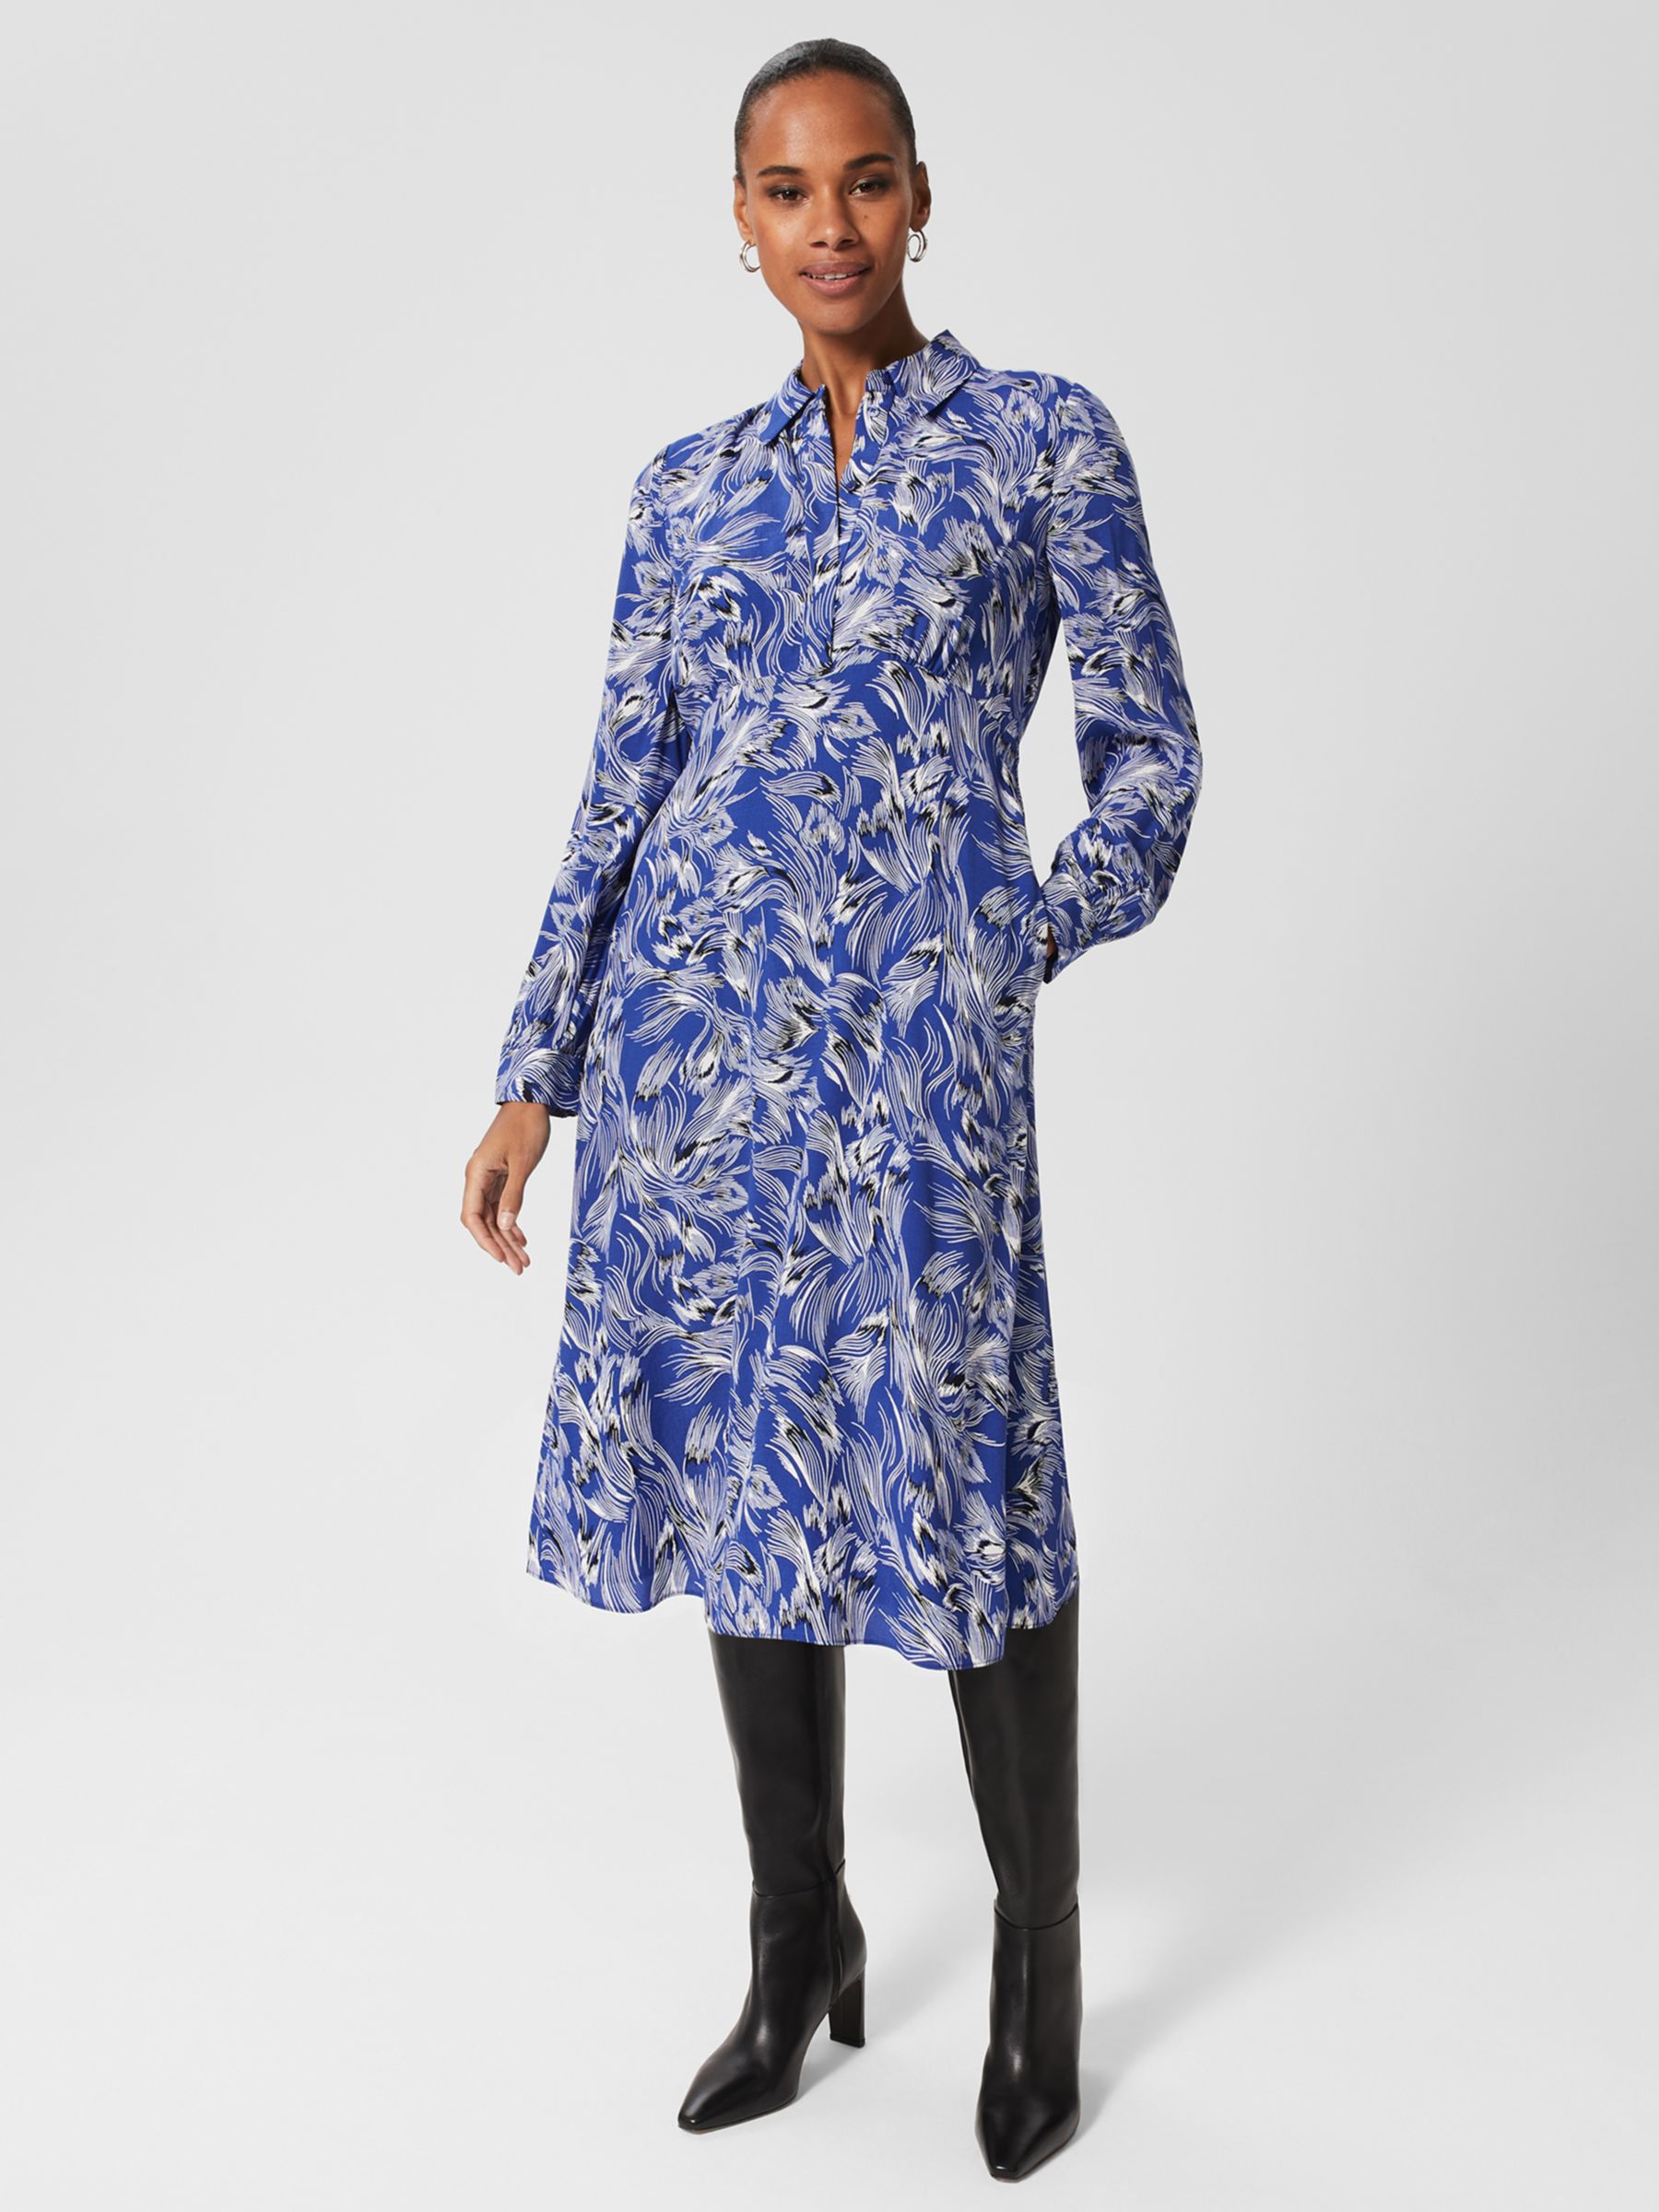 Hobbs Octavia Платье-рубашка с принтом перьев, Синий/Мульти